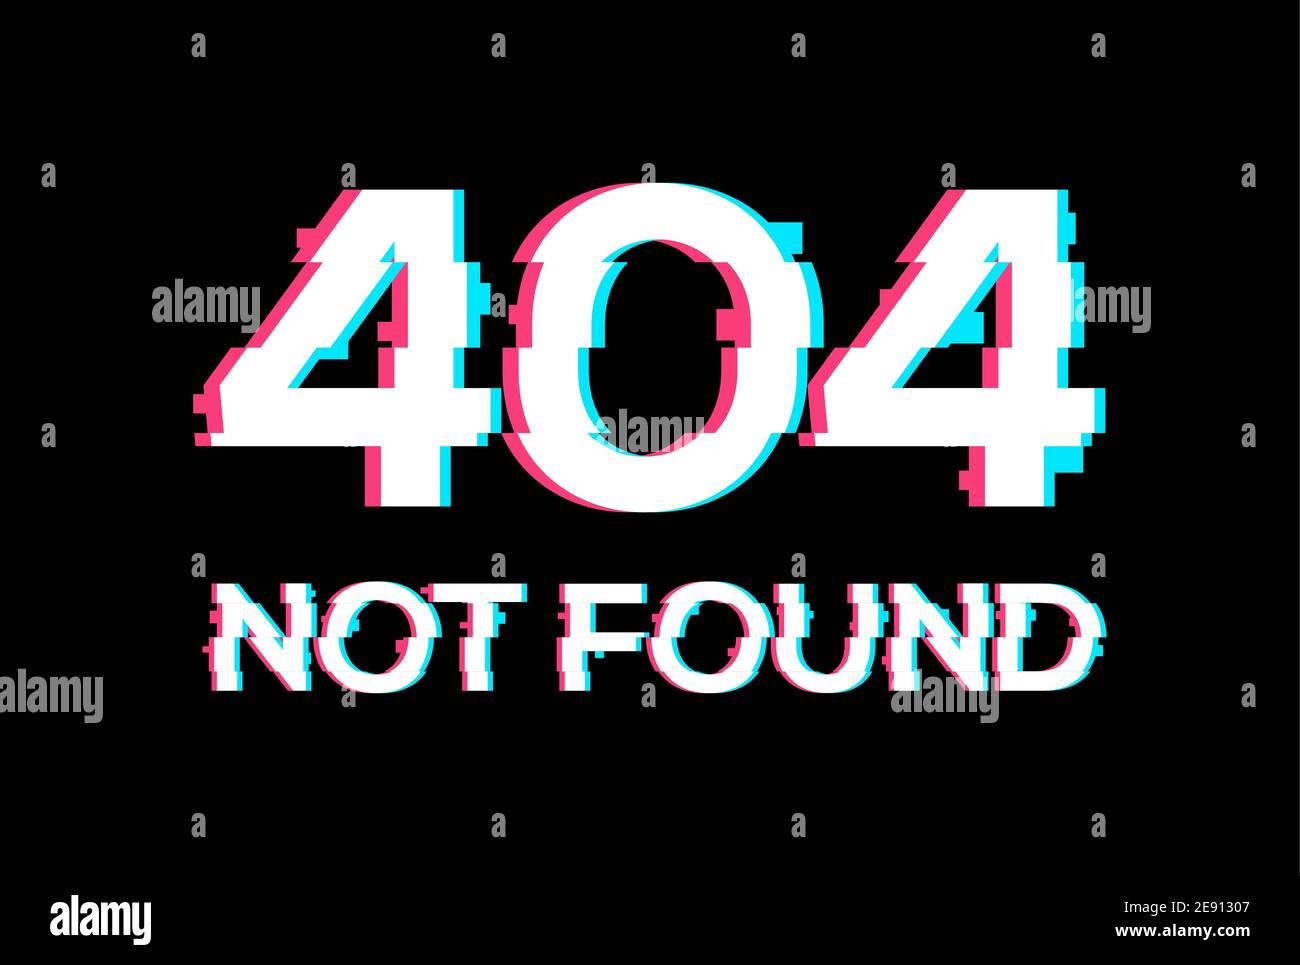 Erreur Glitch 404 Page De L Ordinateur Ecran D Effet De Mise En Page D Erreur De Banniere Anaglyph Glitch 404 Image Vectorielle Stock Alamy